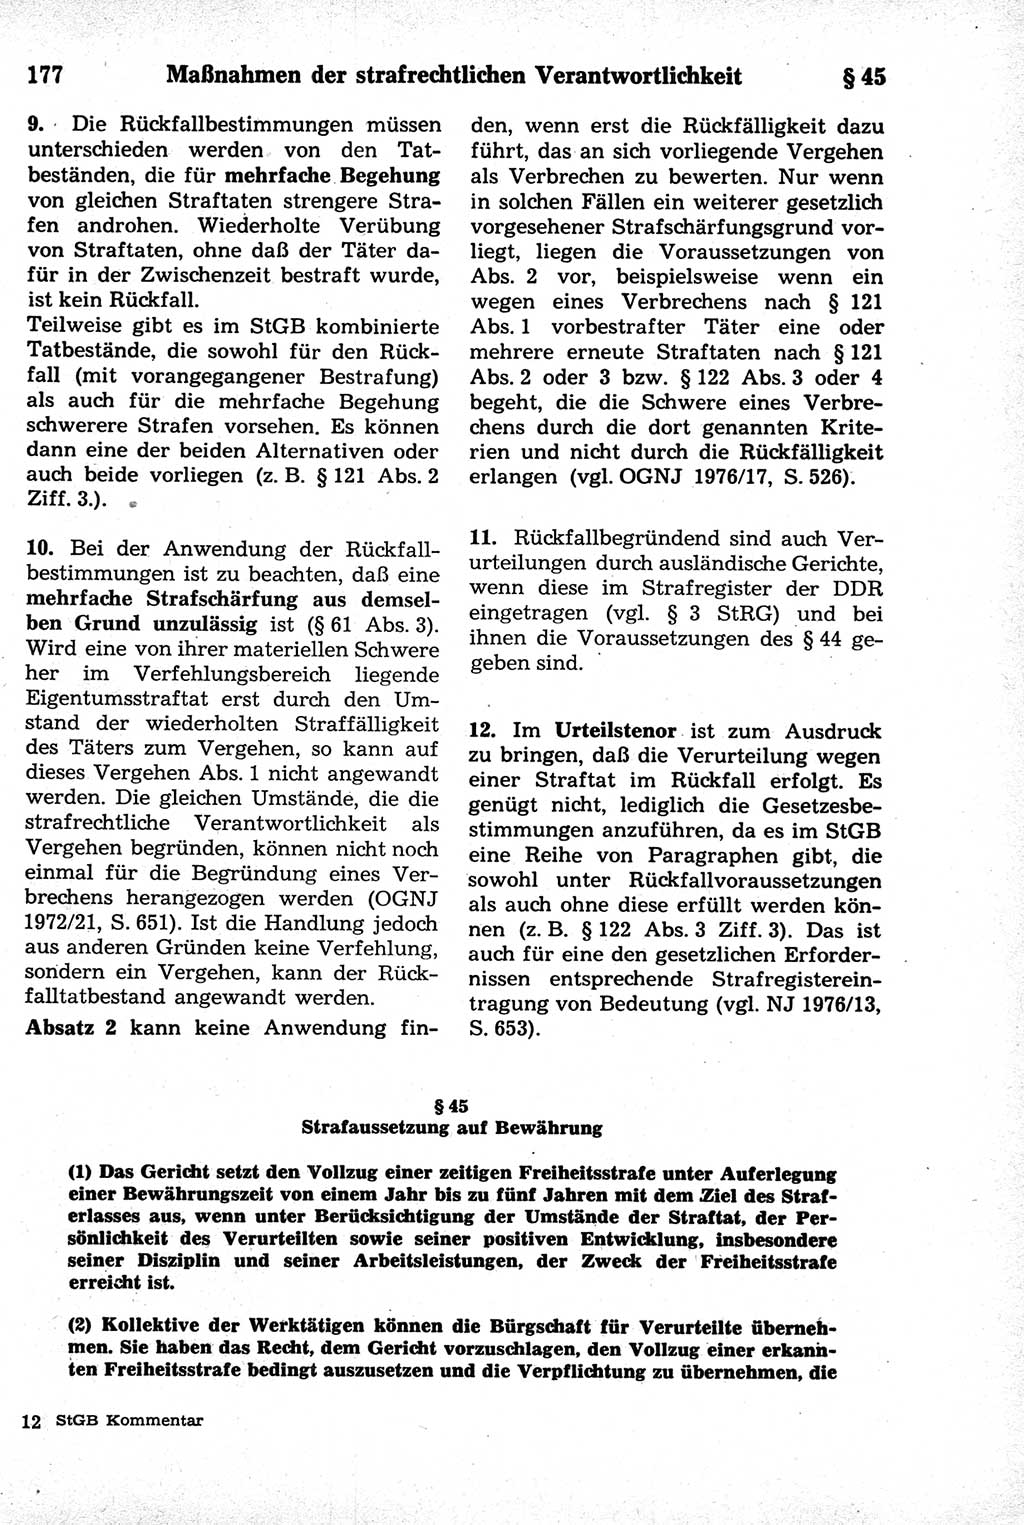 Strafrecht der Deutschen Demokratischen Republik (DDR), Kommentar zum Strafgesetzbuch (StGB) 1981, Seite 177 (Strafr. DDR Komm. StGB 1981, S. 177)